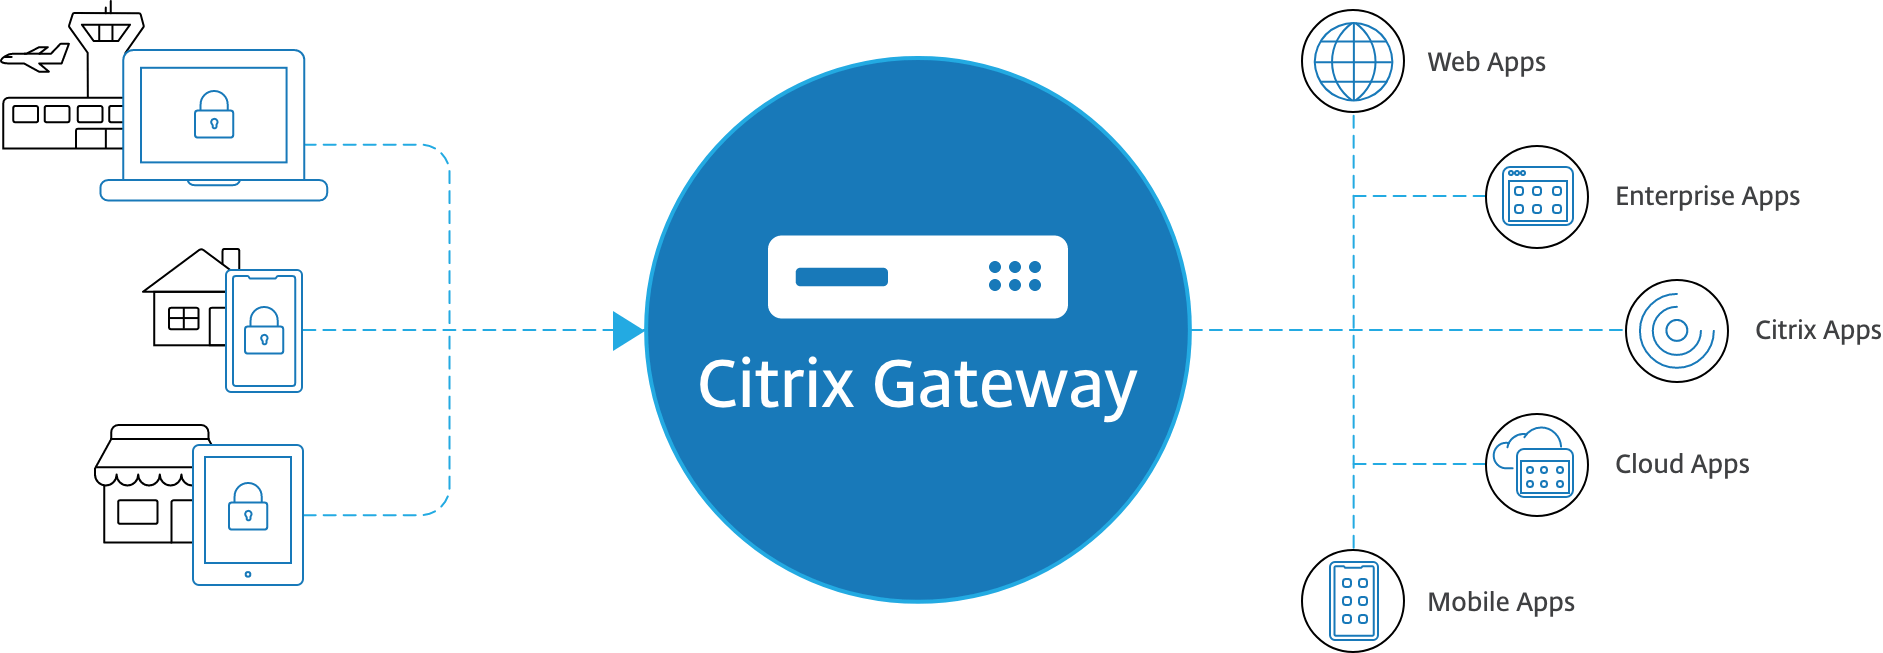 citrix gateway